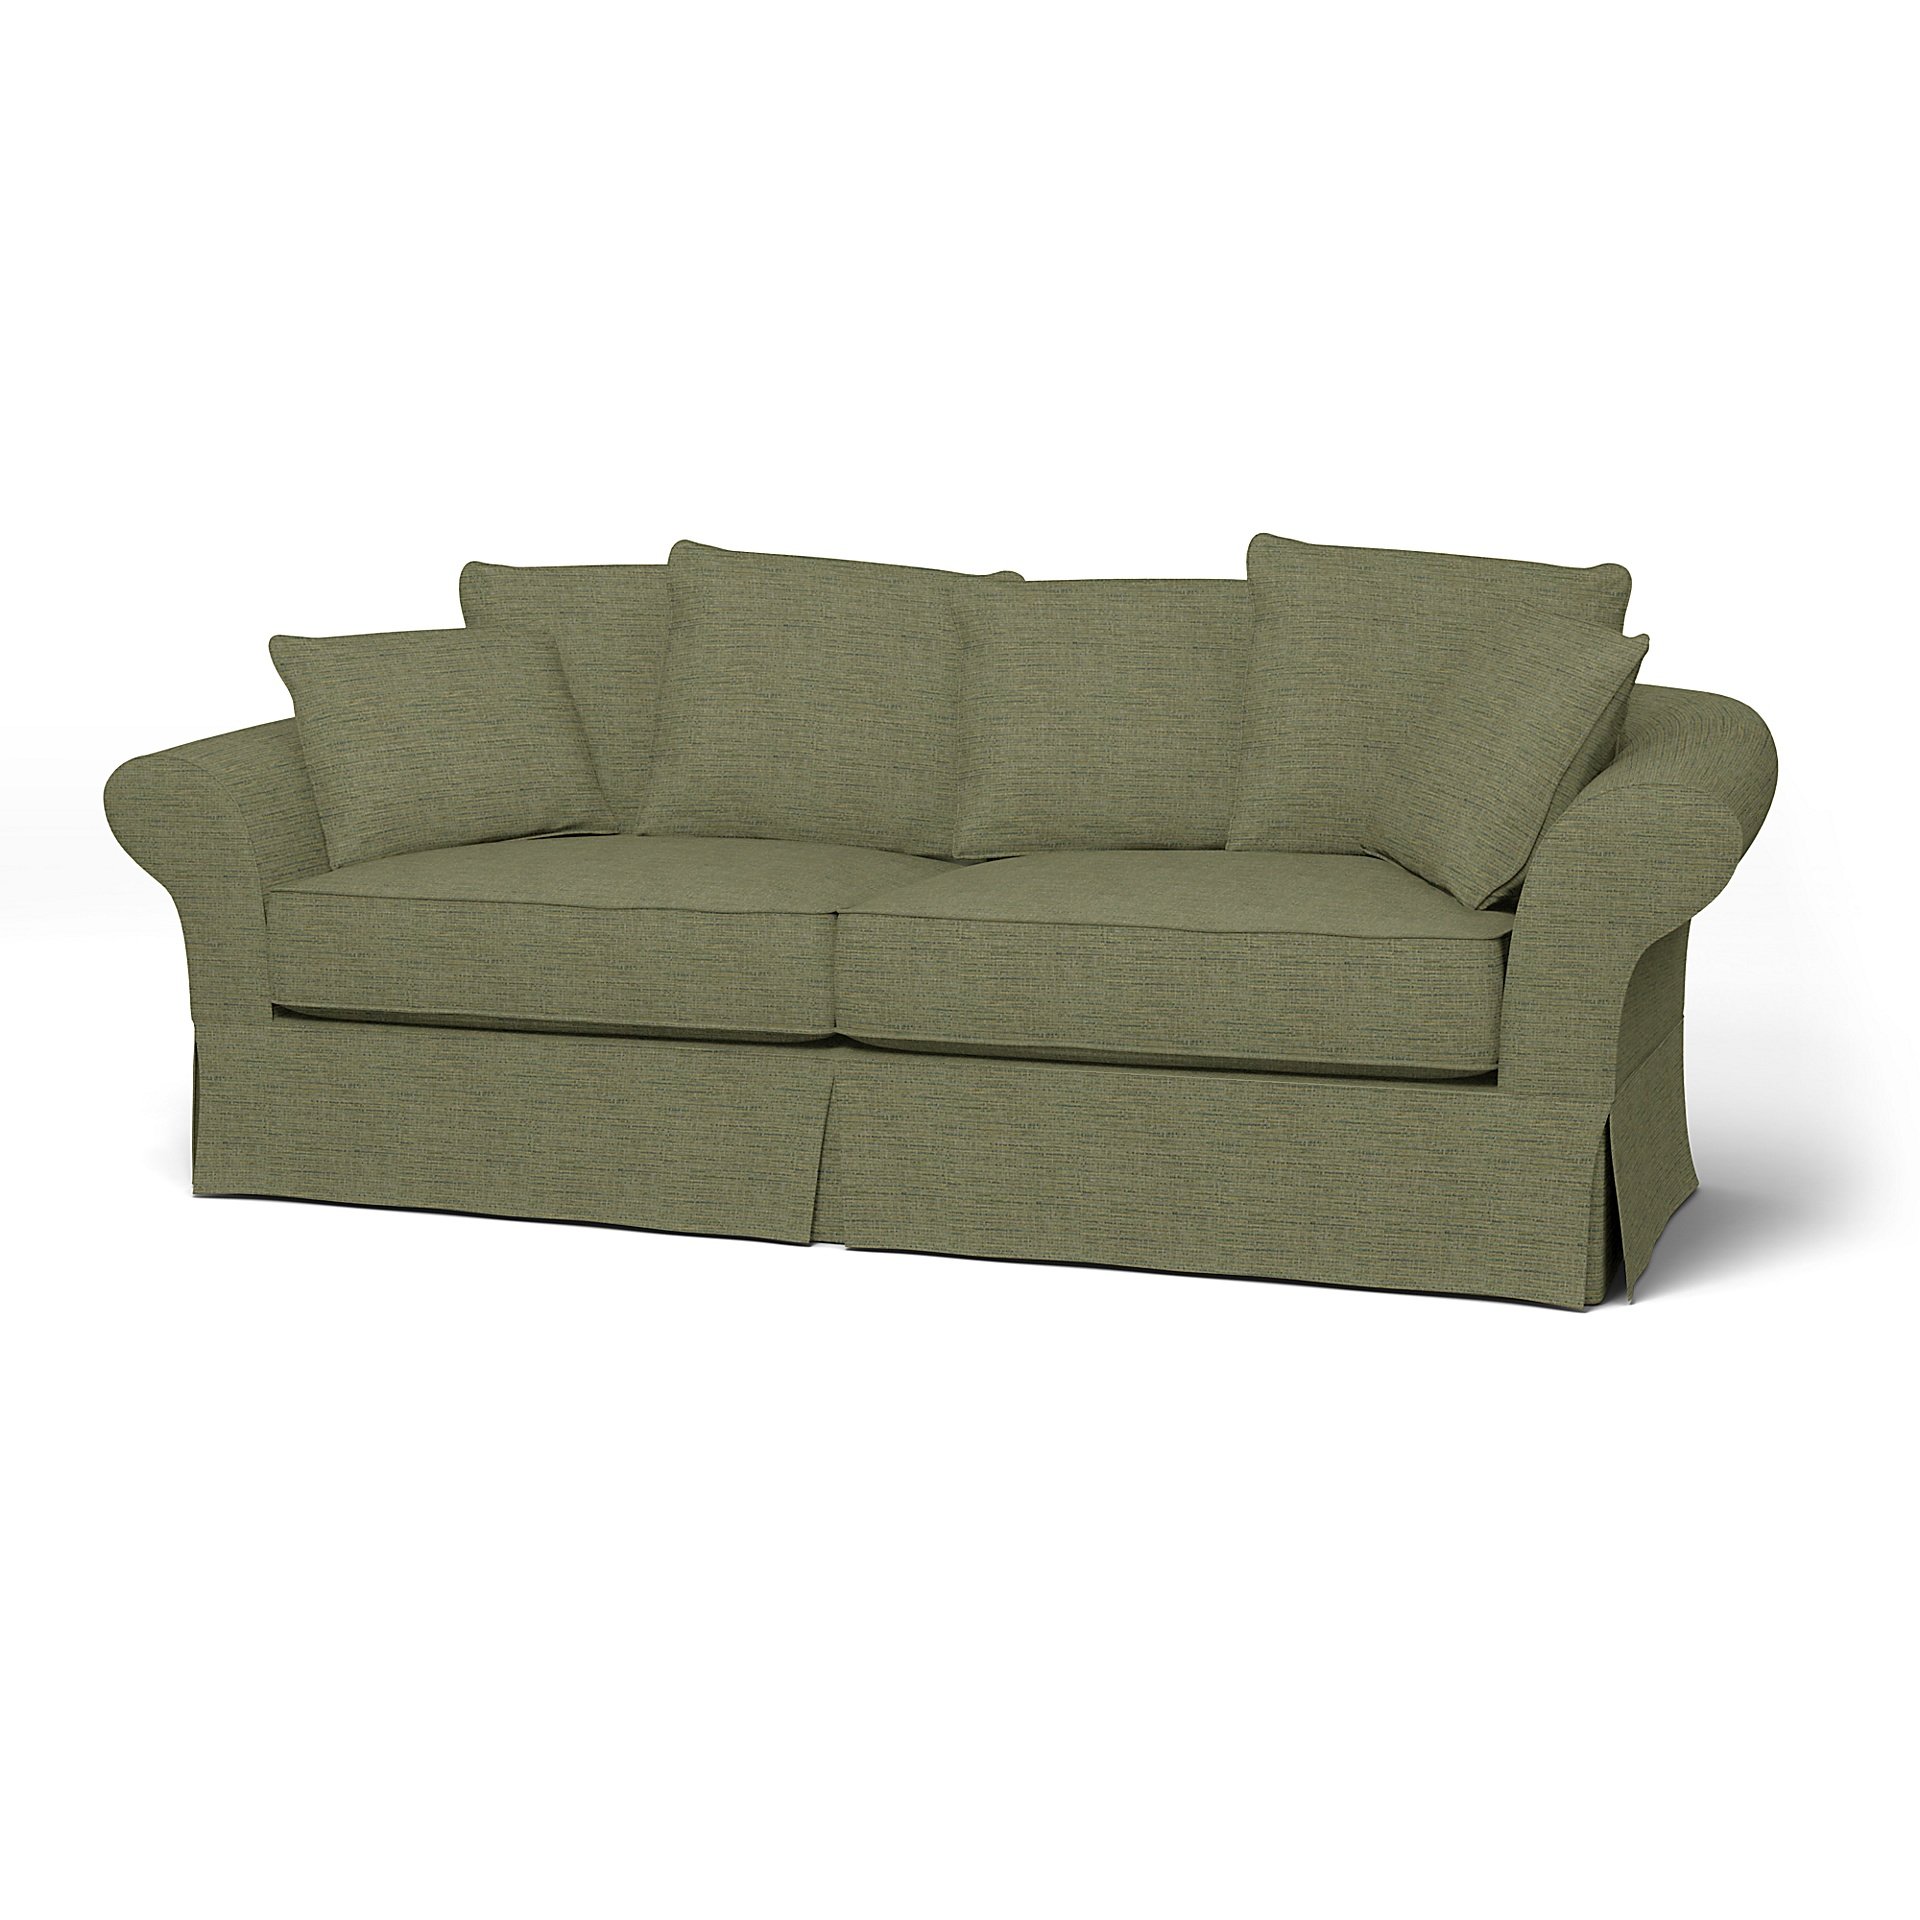 IKEA - Backamo 3 Seater Sofa Cover, Meadow Green, Boucle & Texture - Bemz